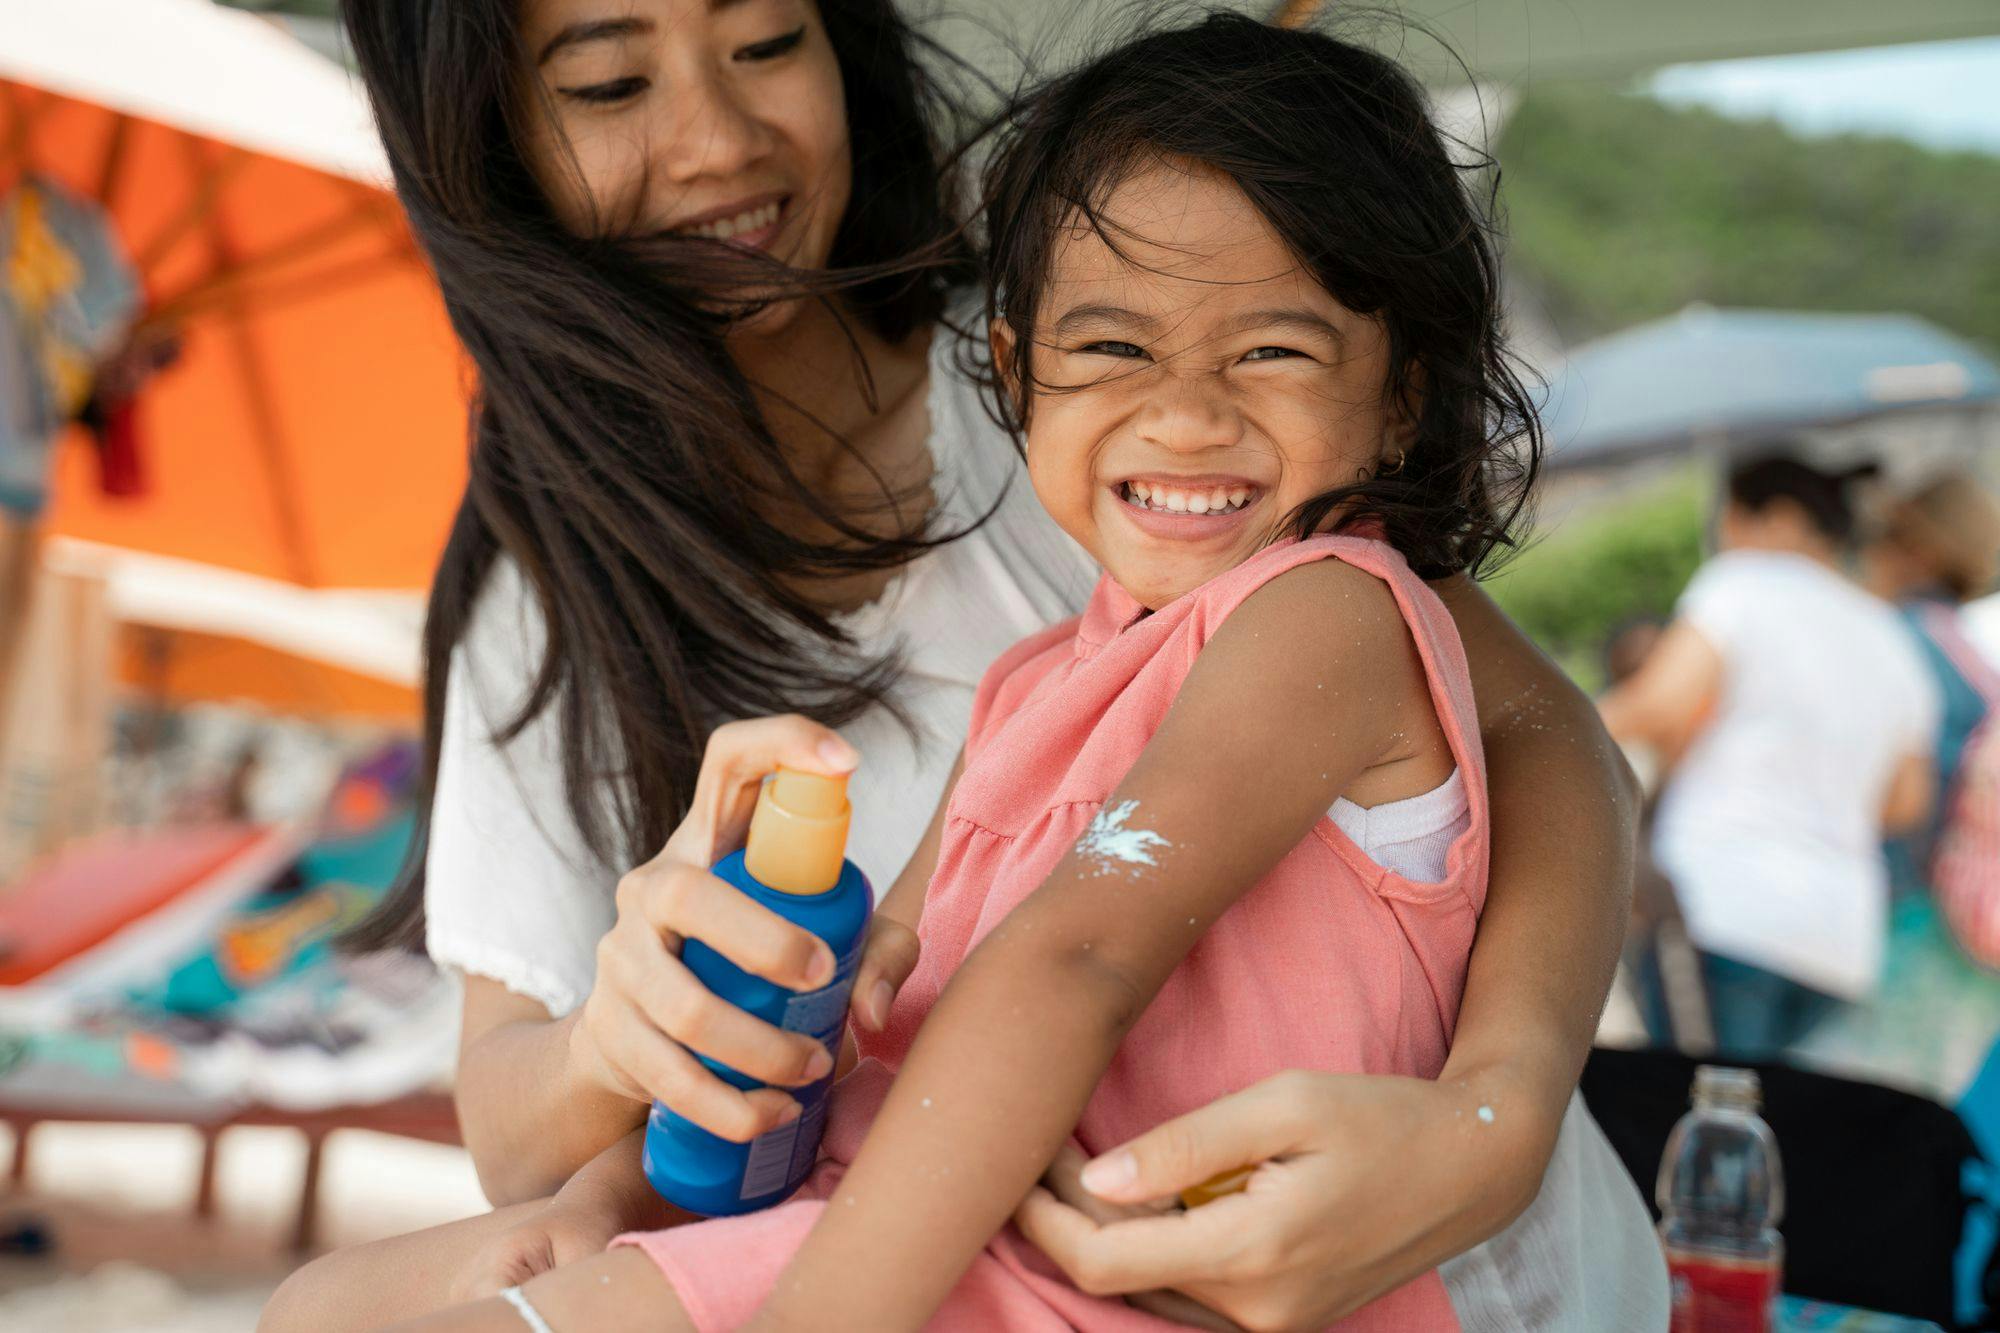 A parent sprays sunscreen onto a smiling child.